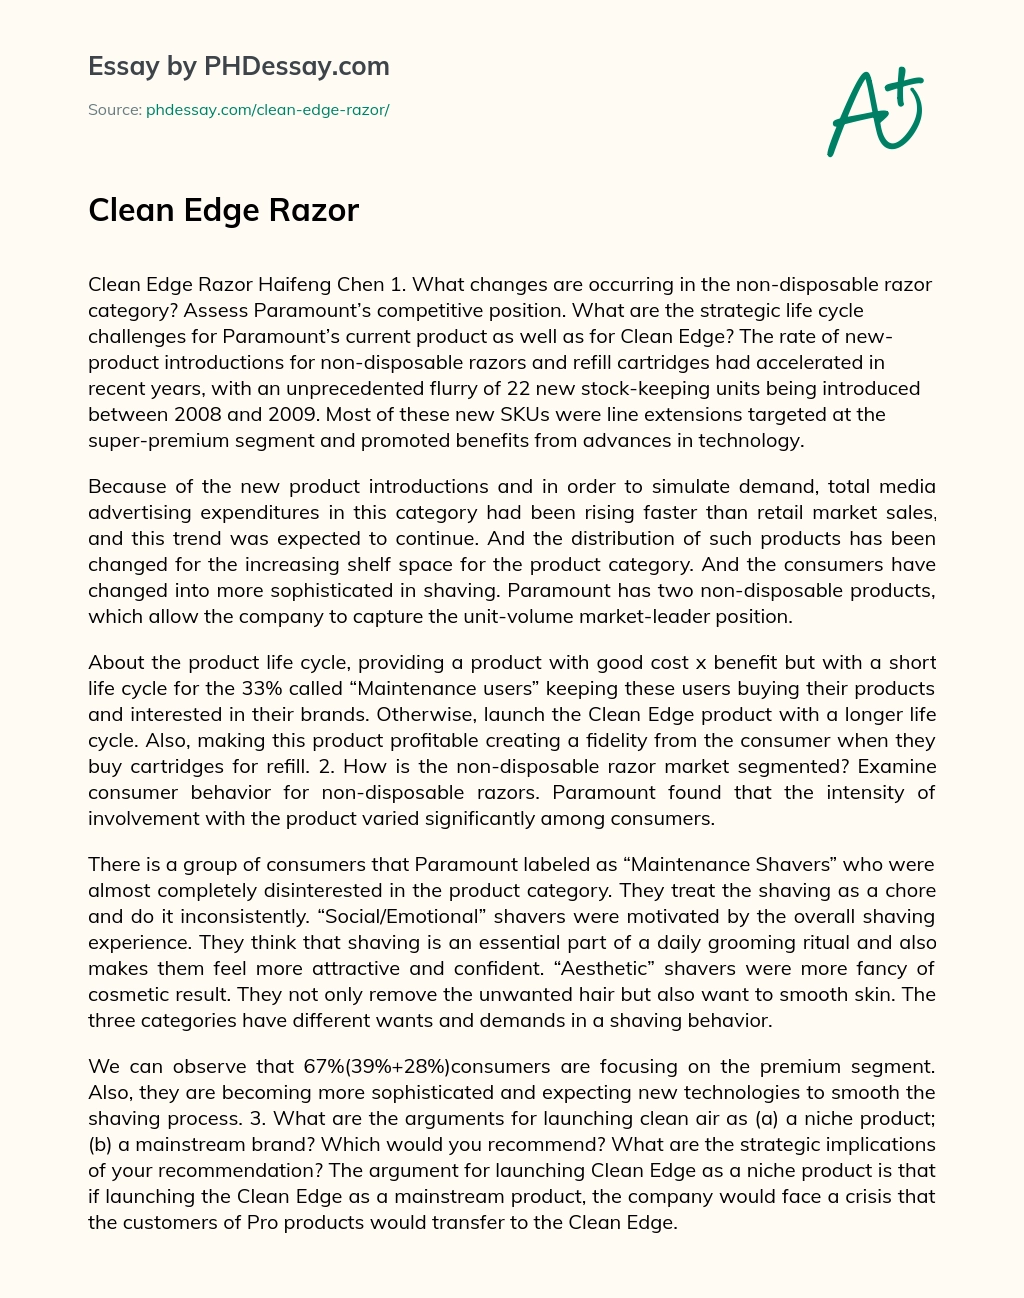 Clean Edge Razor essay